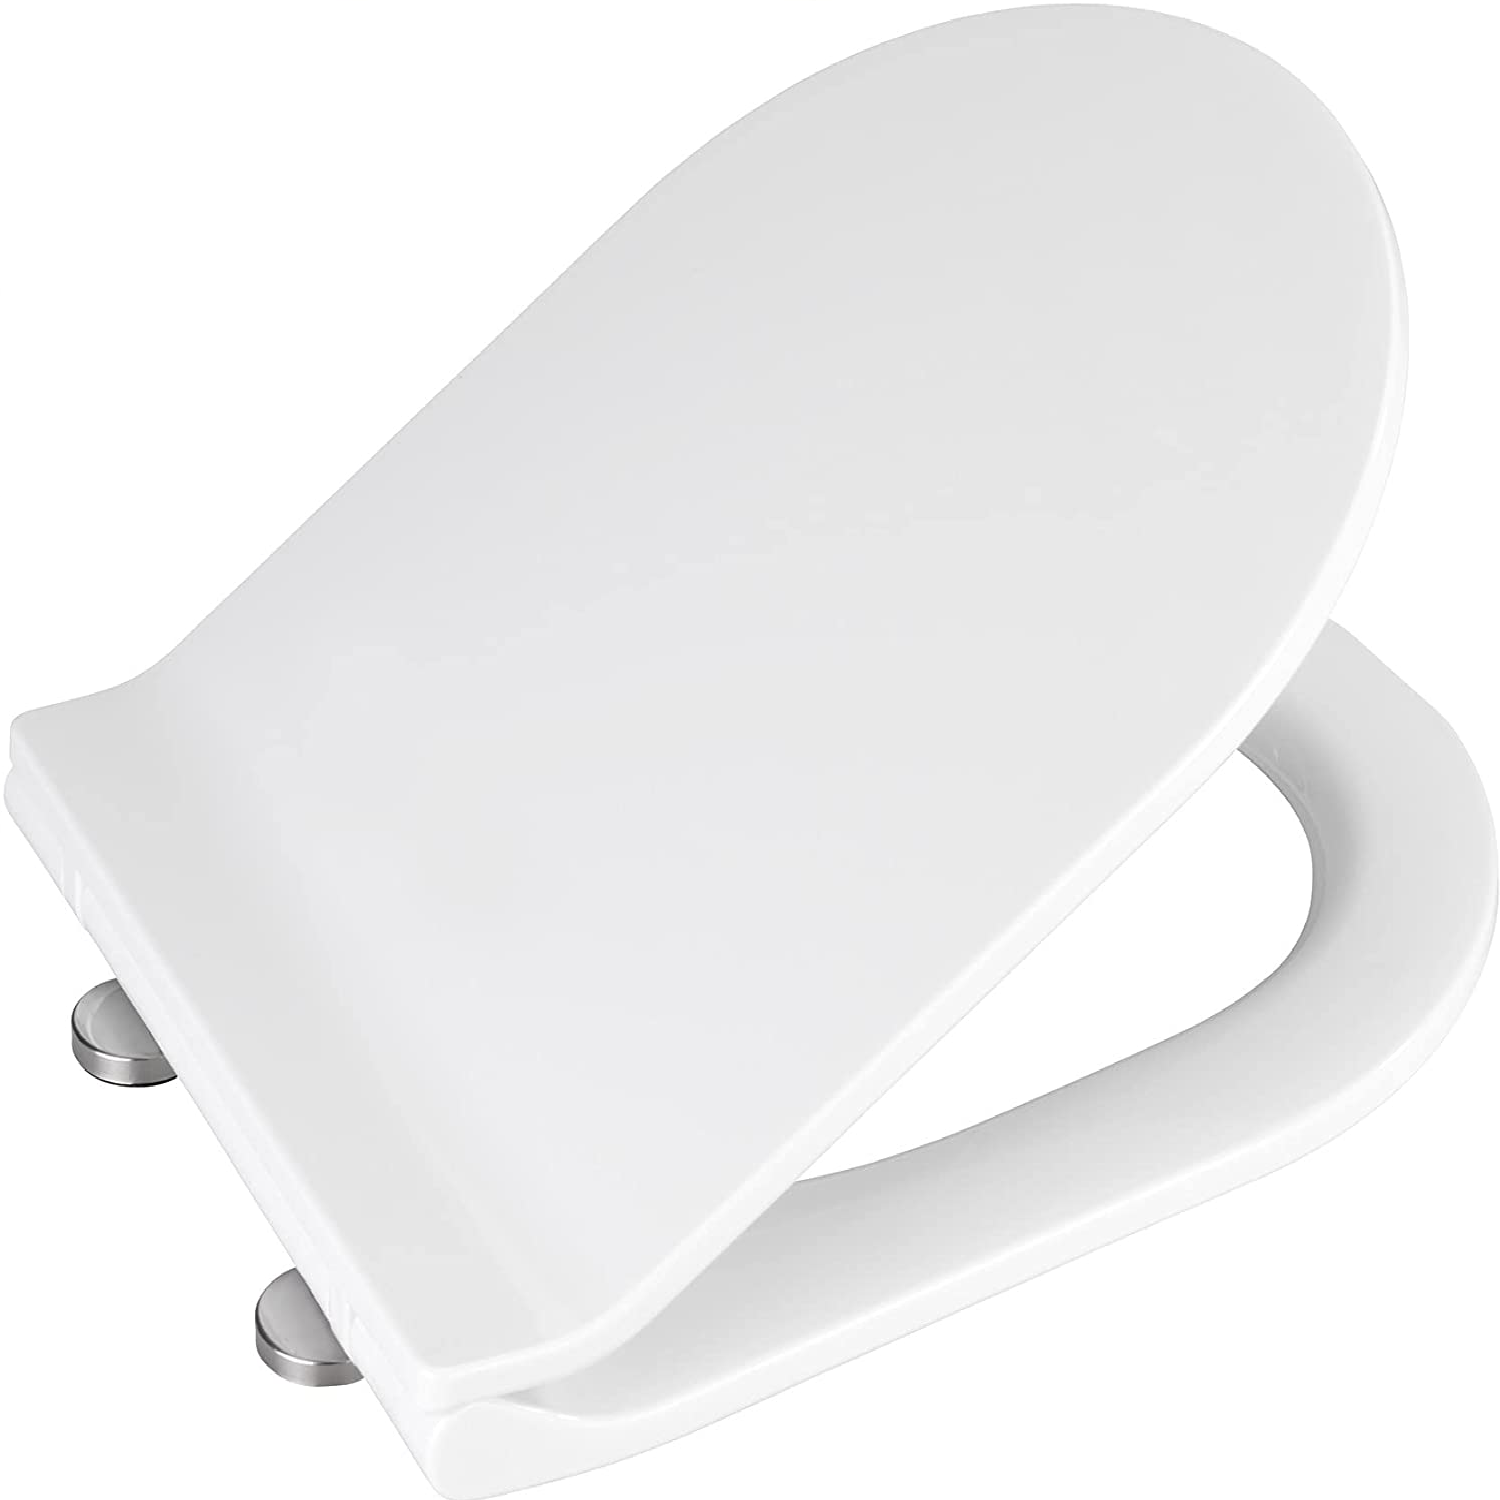 WC-Sitz Habos - Toiletten-Sitz mit Absenkautomatik, rostfreie Fix-Clip Hygiene Edelstahlbefestigung, Thermoplast, 36 x 46 cm, Weiß